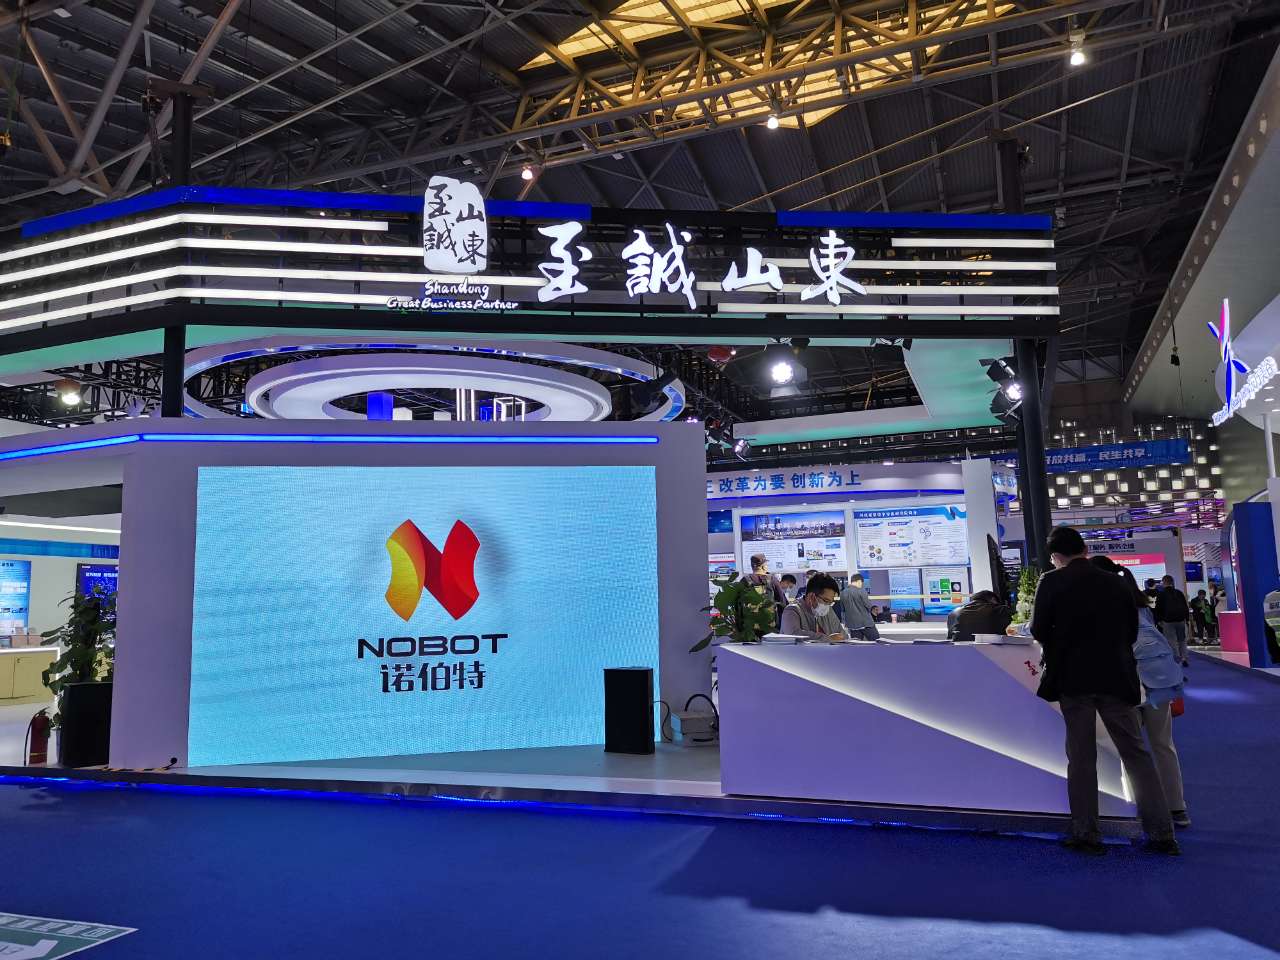 Nobot đã thực hiện một chương trình tuyệt vời tại Hội chợ Công nghệ Quốc tế Trung Quốc (Thượng Hải) lần thứ 8